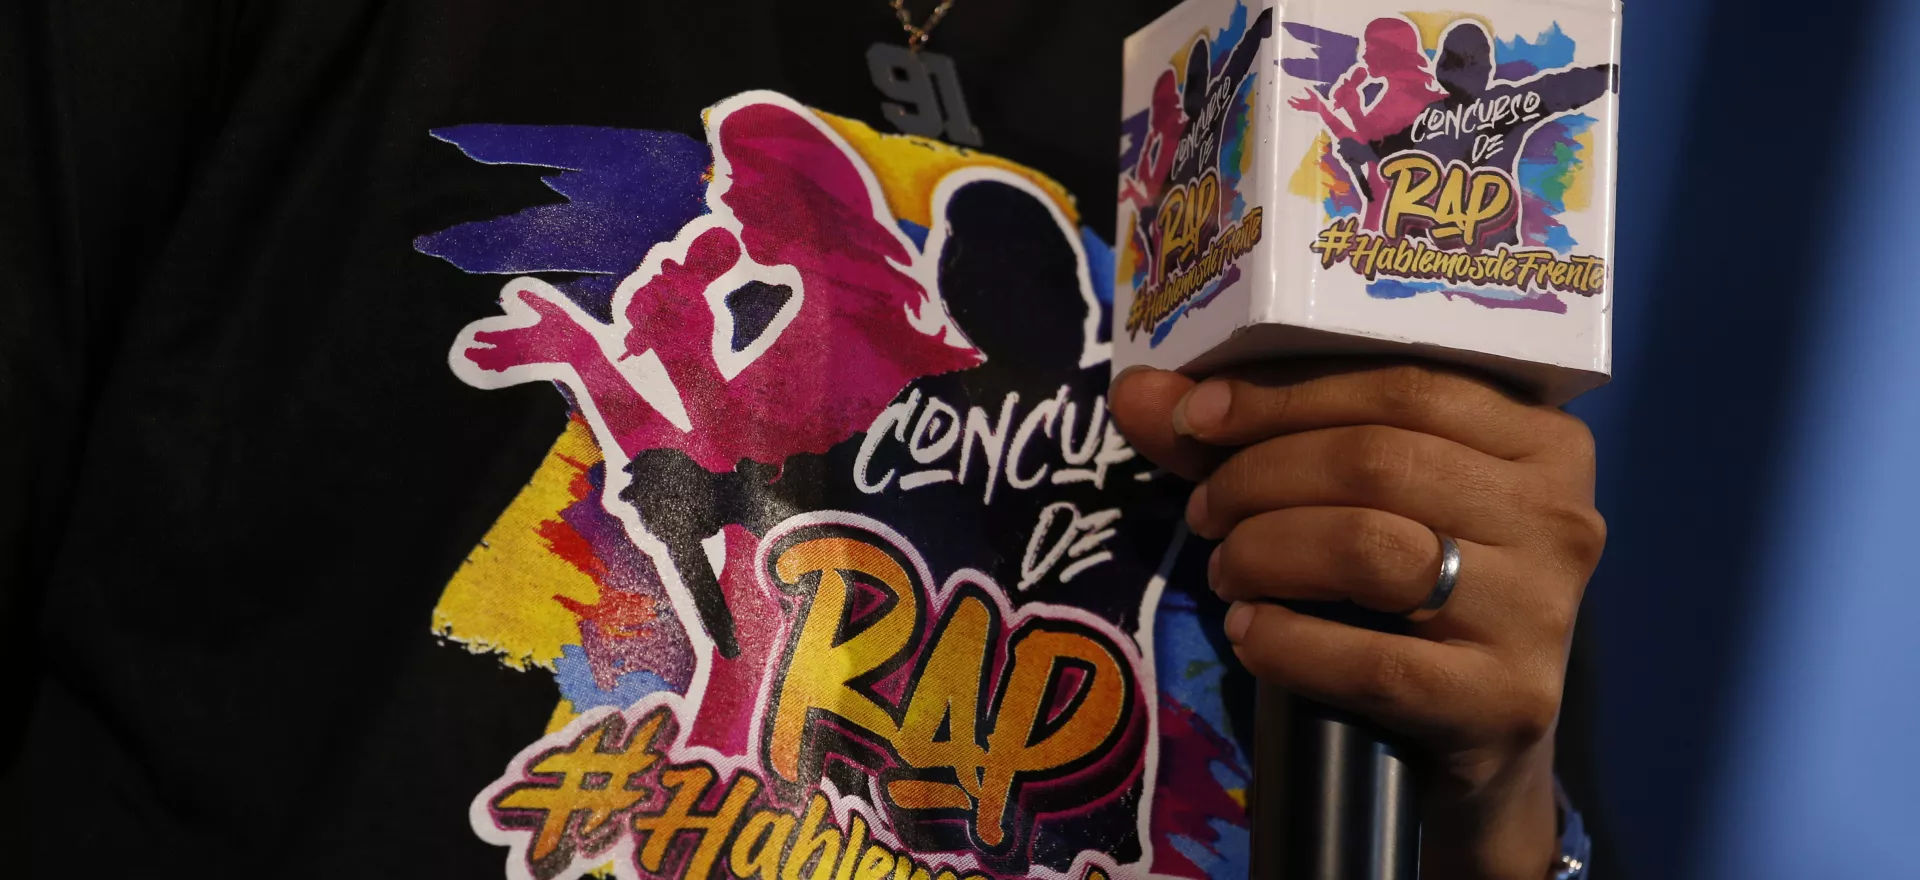 animador del evento de premiación del concurso de rap Hablemos de frente sostiene micrófono mostrando el logotema del concurso